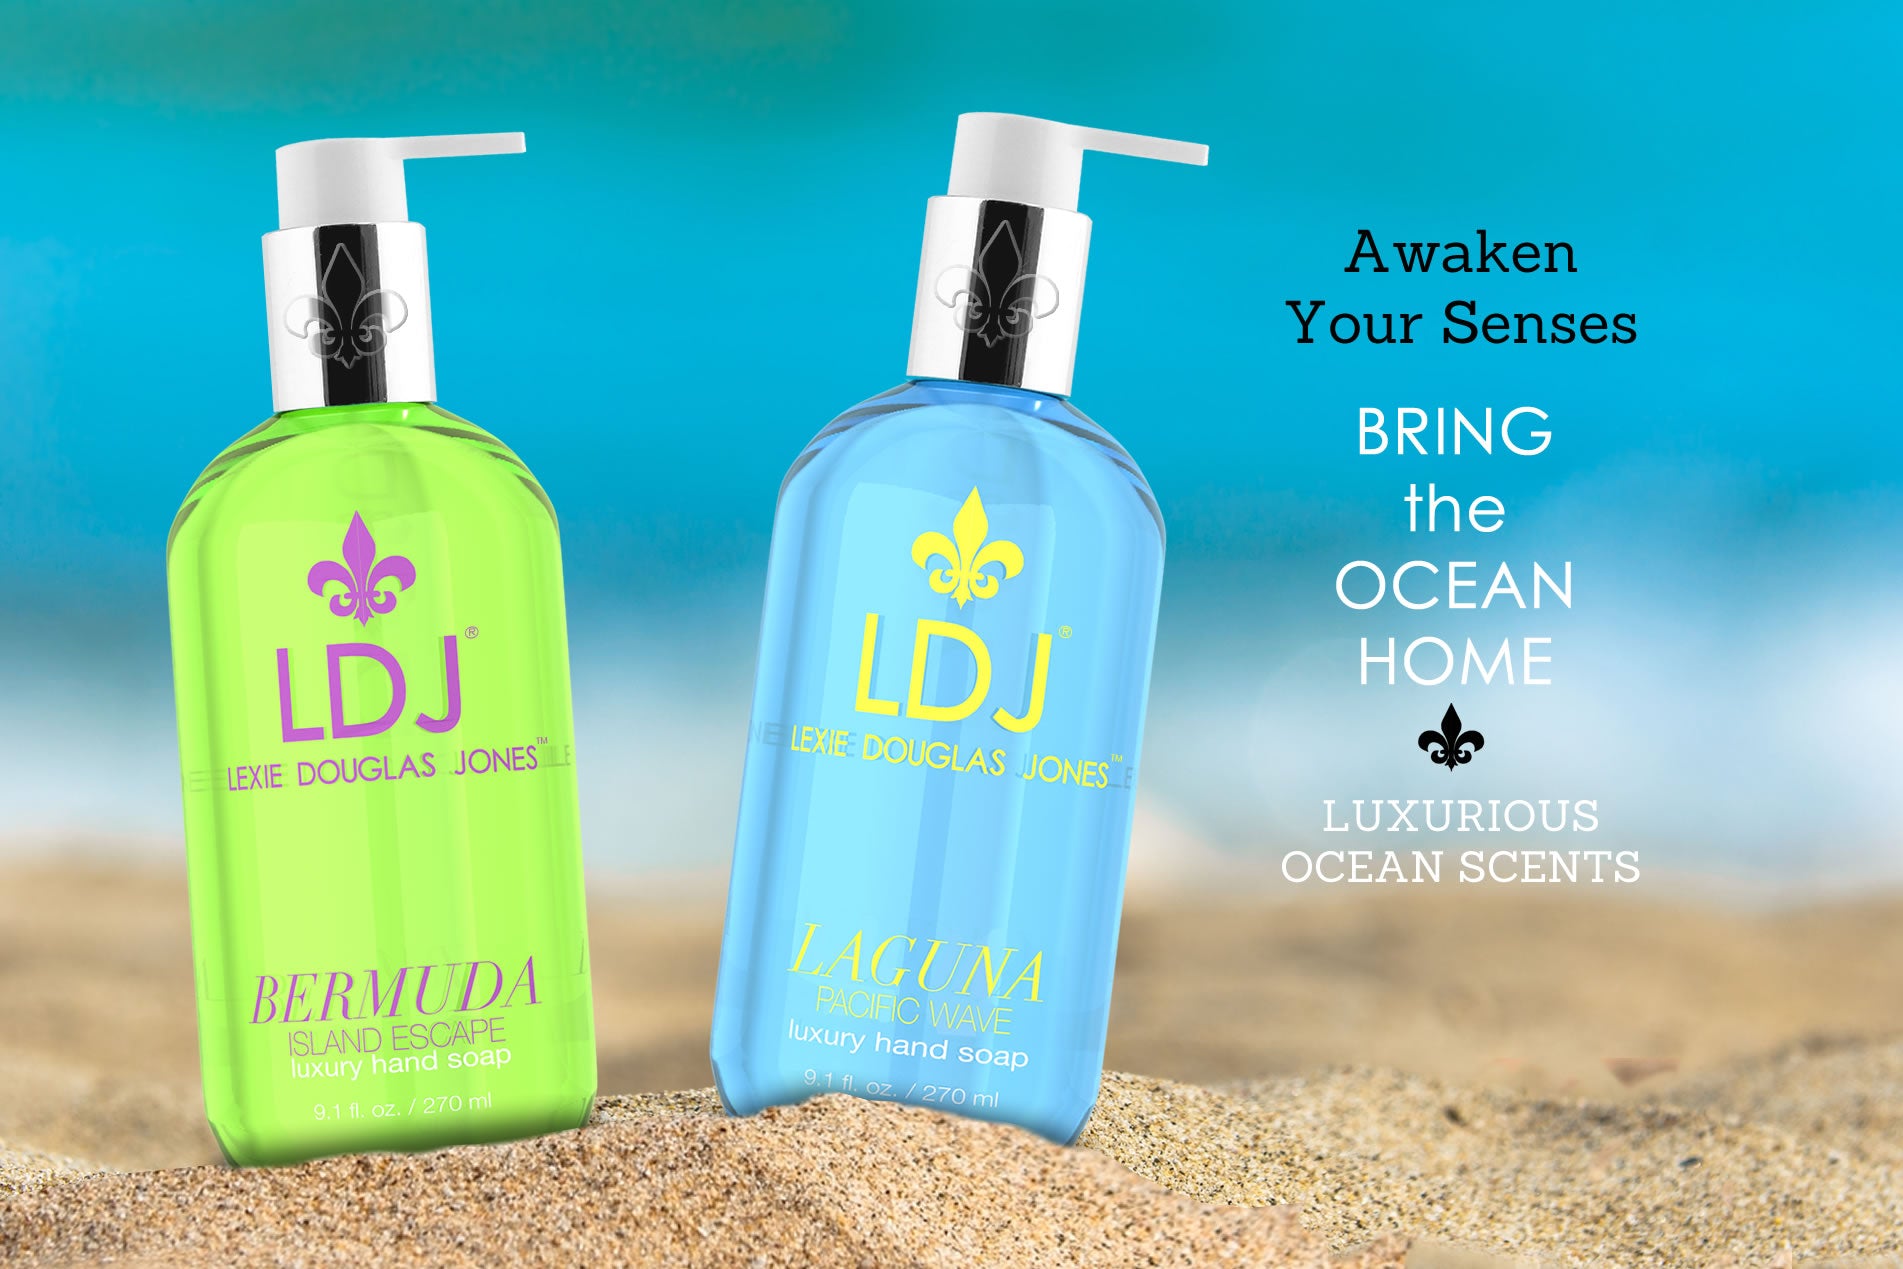 Awaken your senses - Bring the ocean home - Luxurious ocean scents